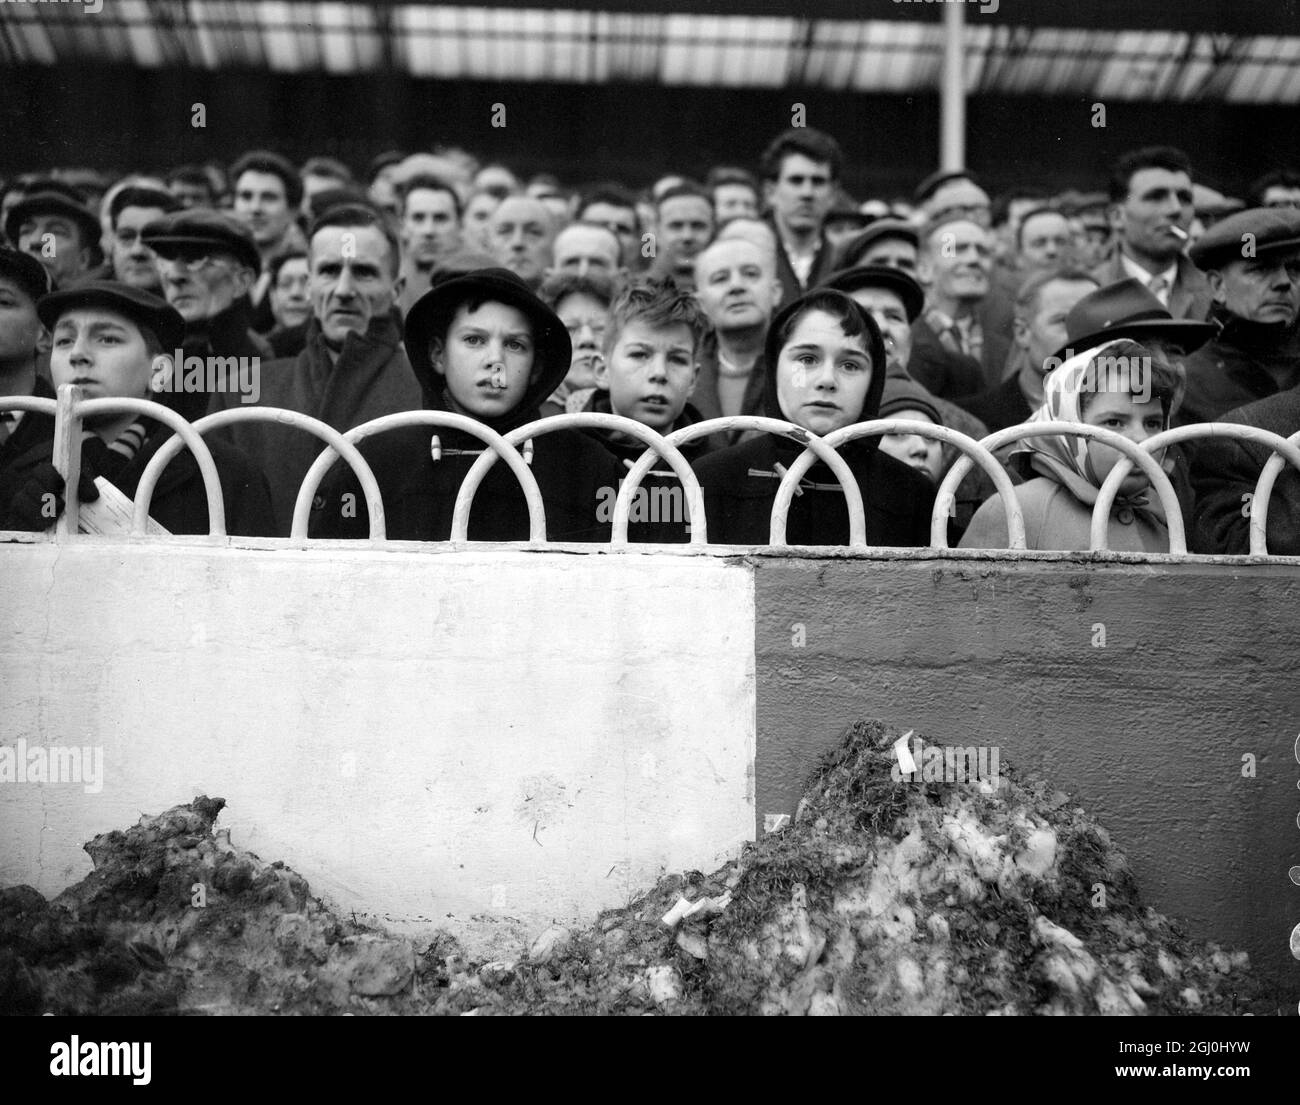 Londra: Con i tumuli di neve spazzati via dal campo di gioco in primo piano, questi spettatori giovani e anziani hanno sfidato il freddo per guardare la loro squadra preferita a White Hart Lane. 16 gennaio 1960 Foto Stock